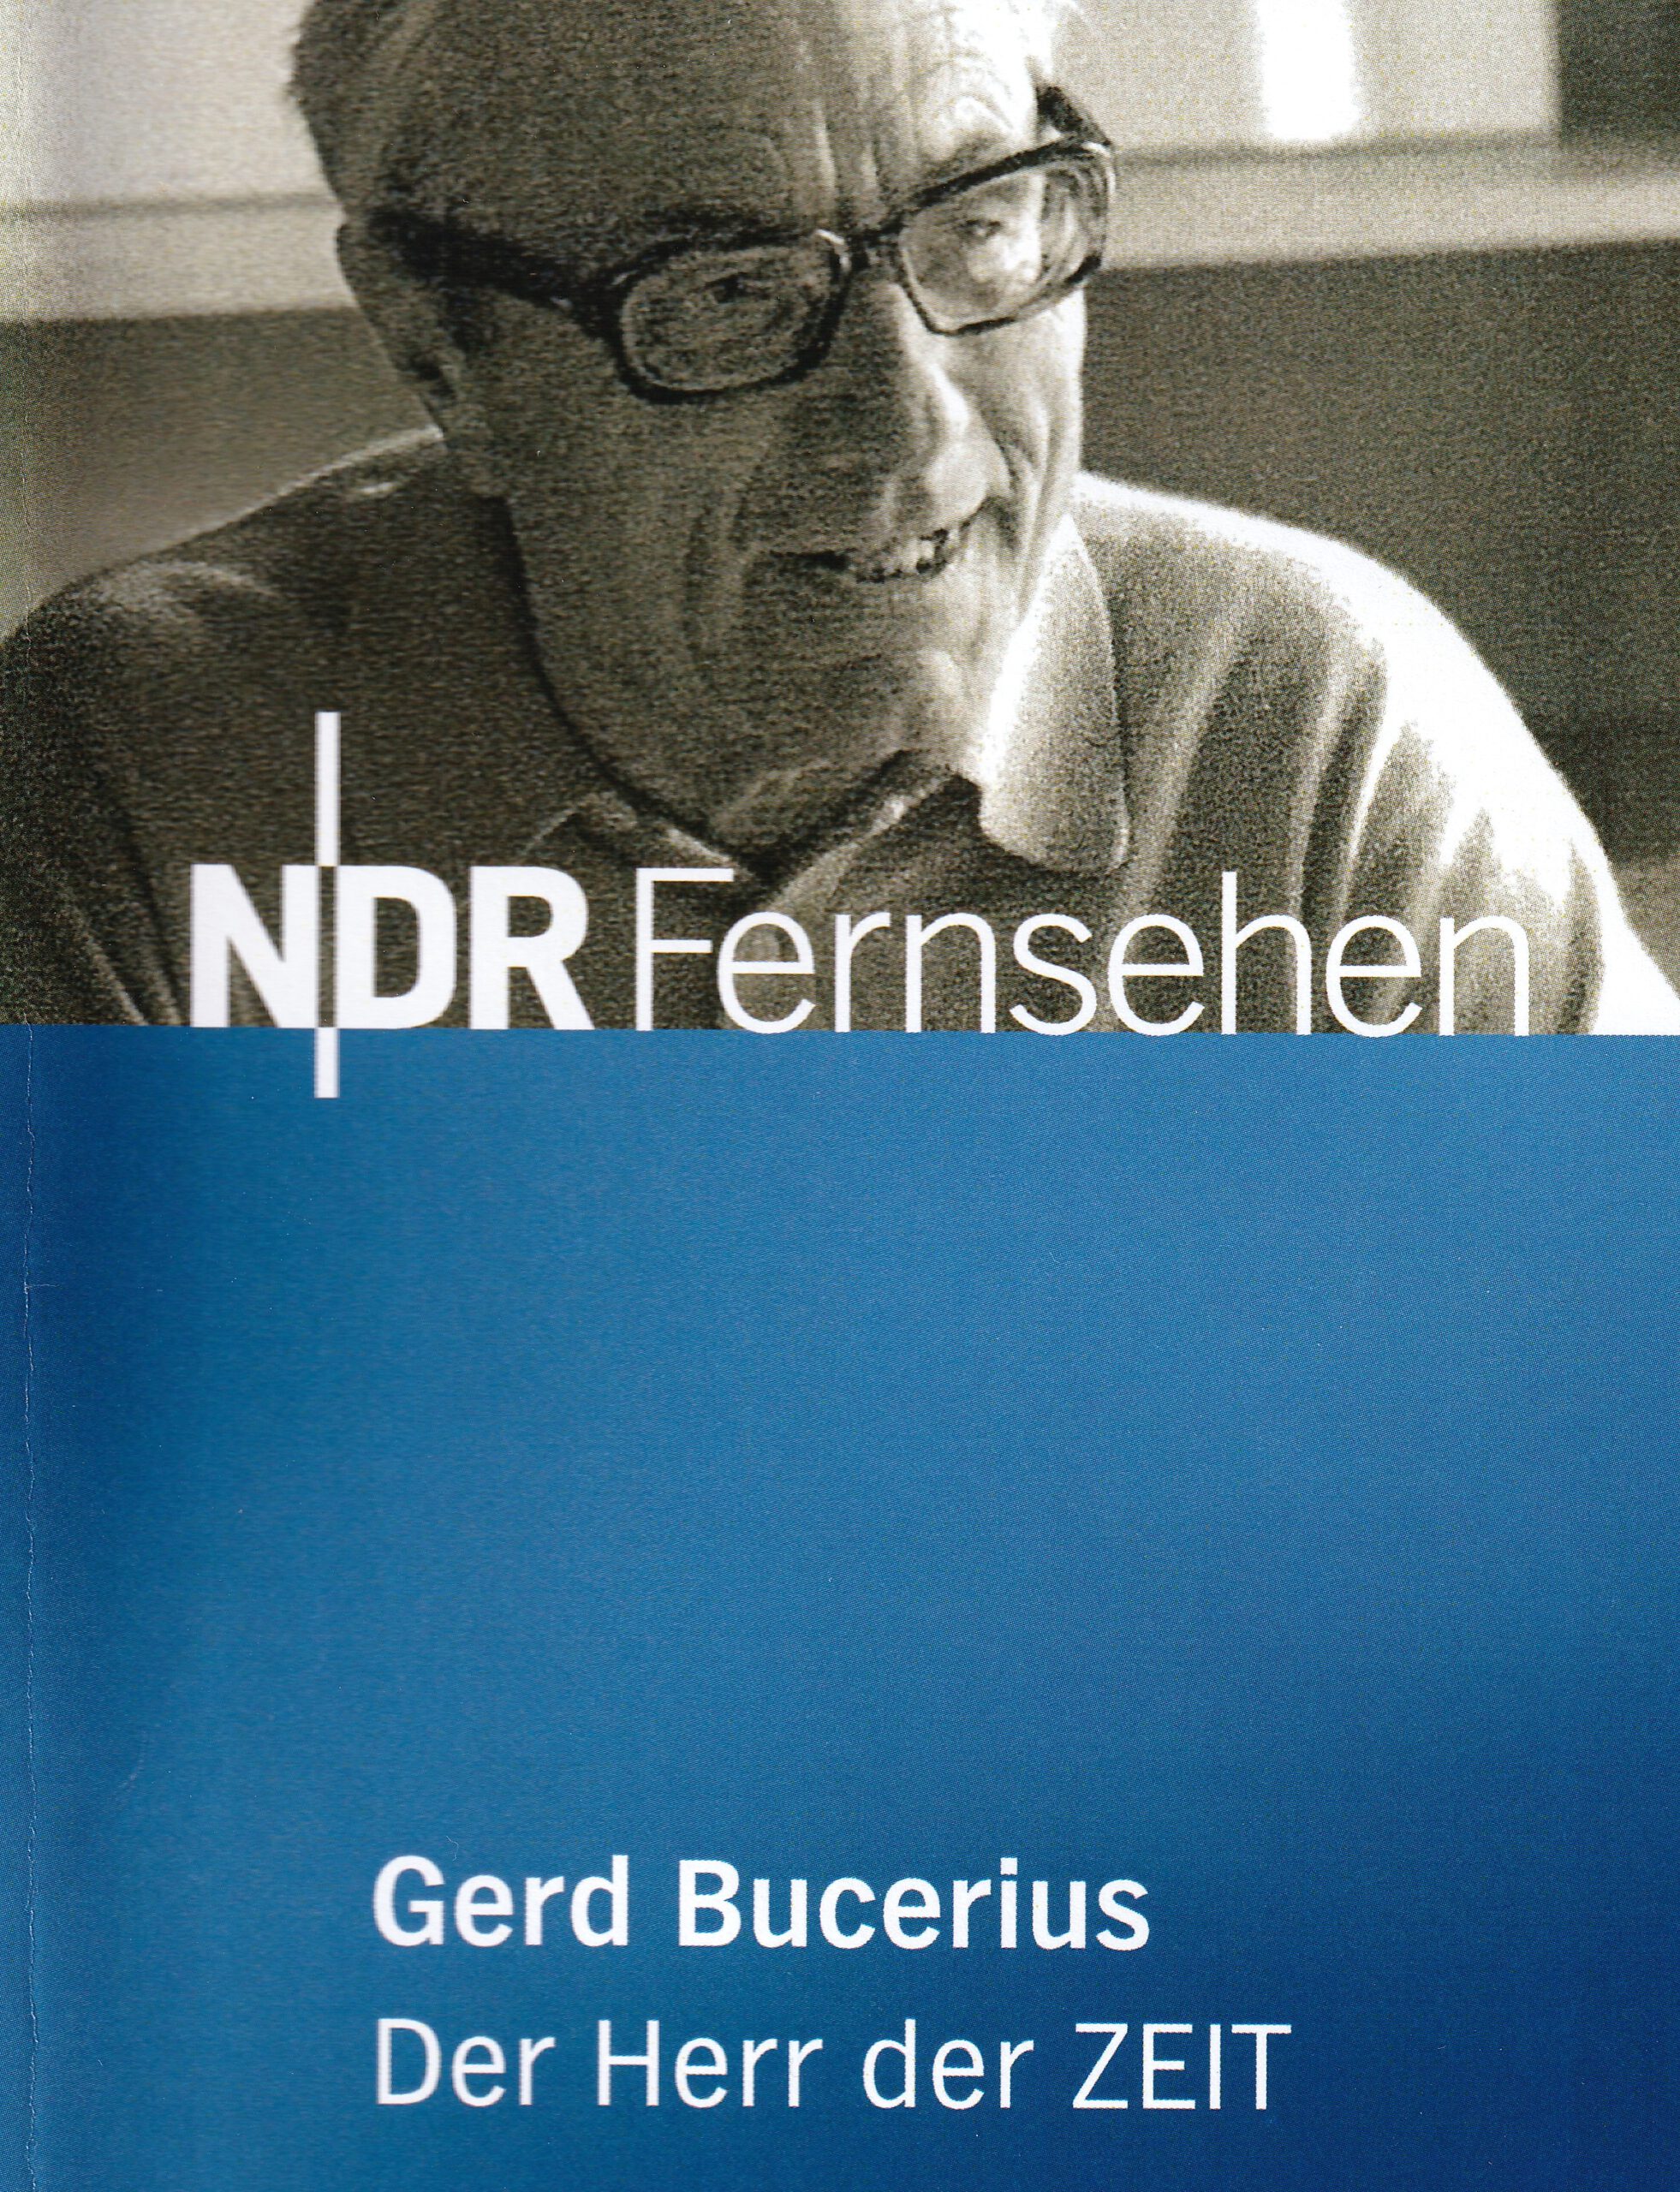 Gerd Bucerius – Der Herr der Zeit